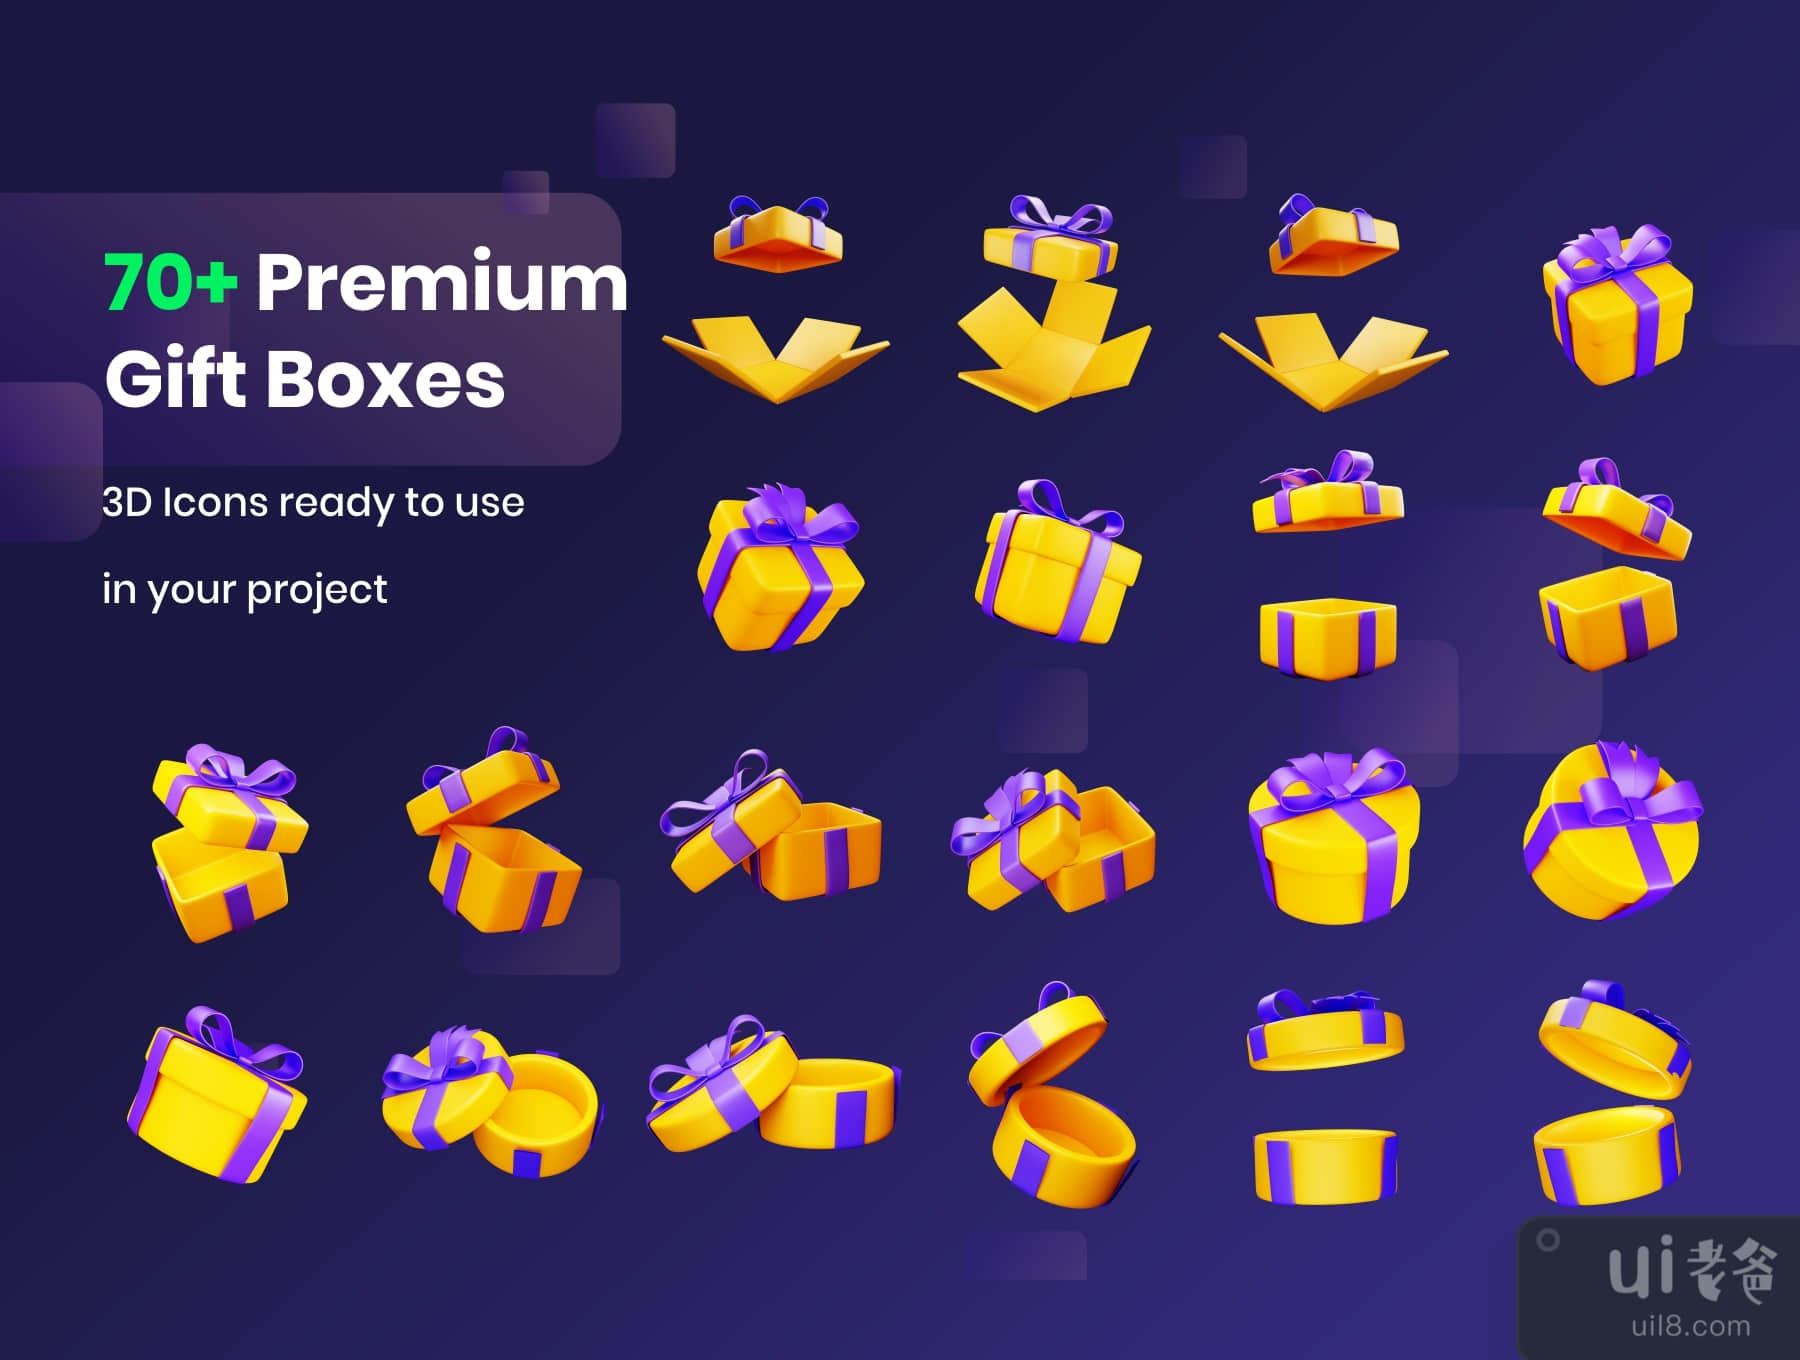 礼品盒 - 三维插图 (Gift Boxes - 3D Illustration)插图7